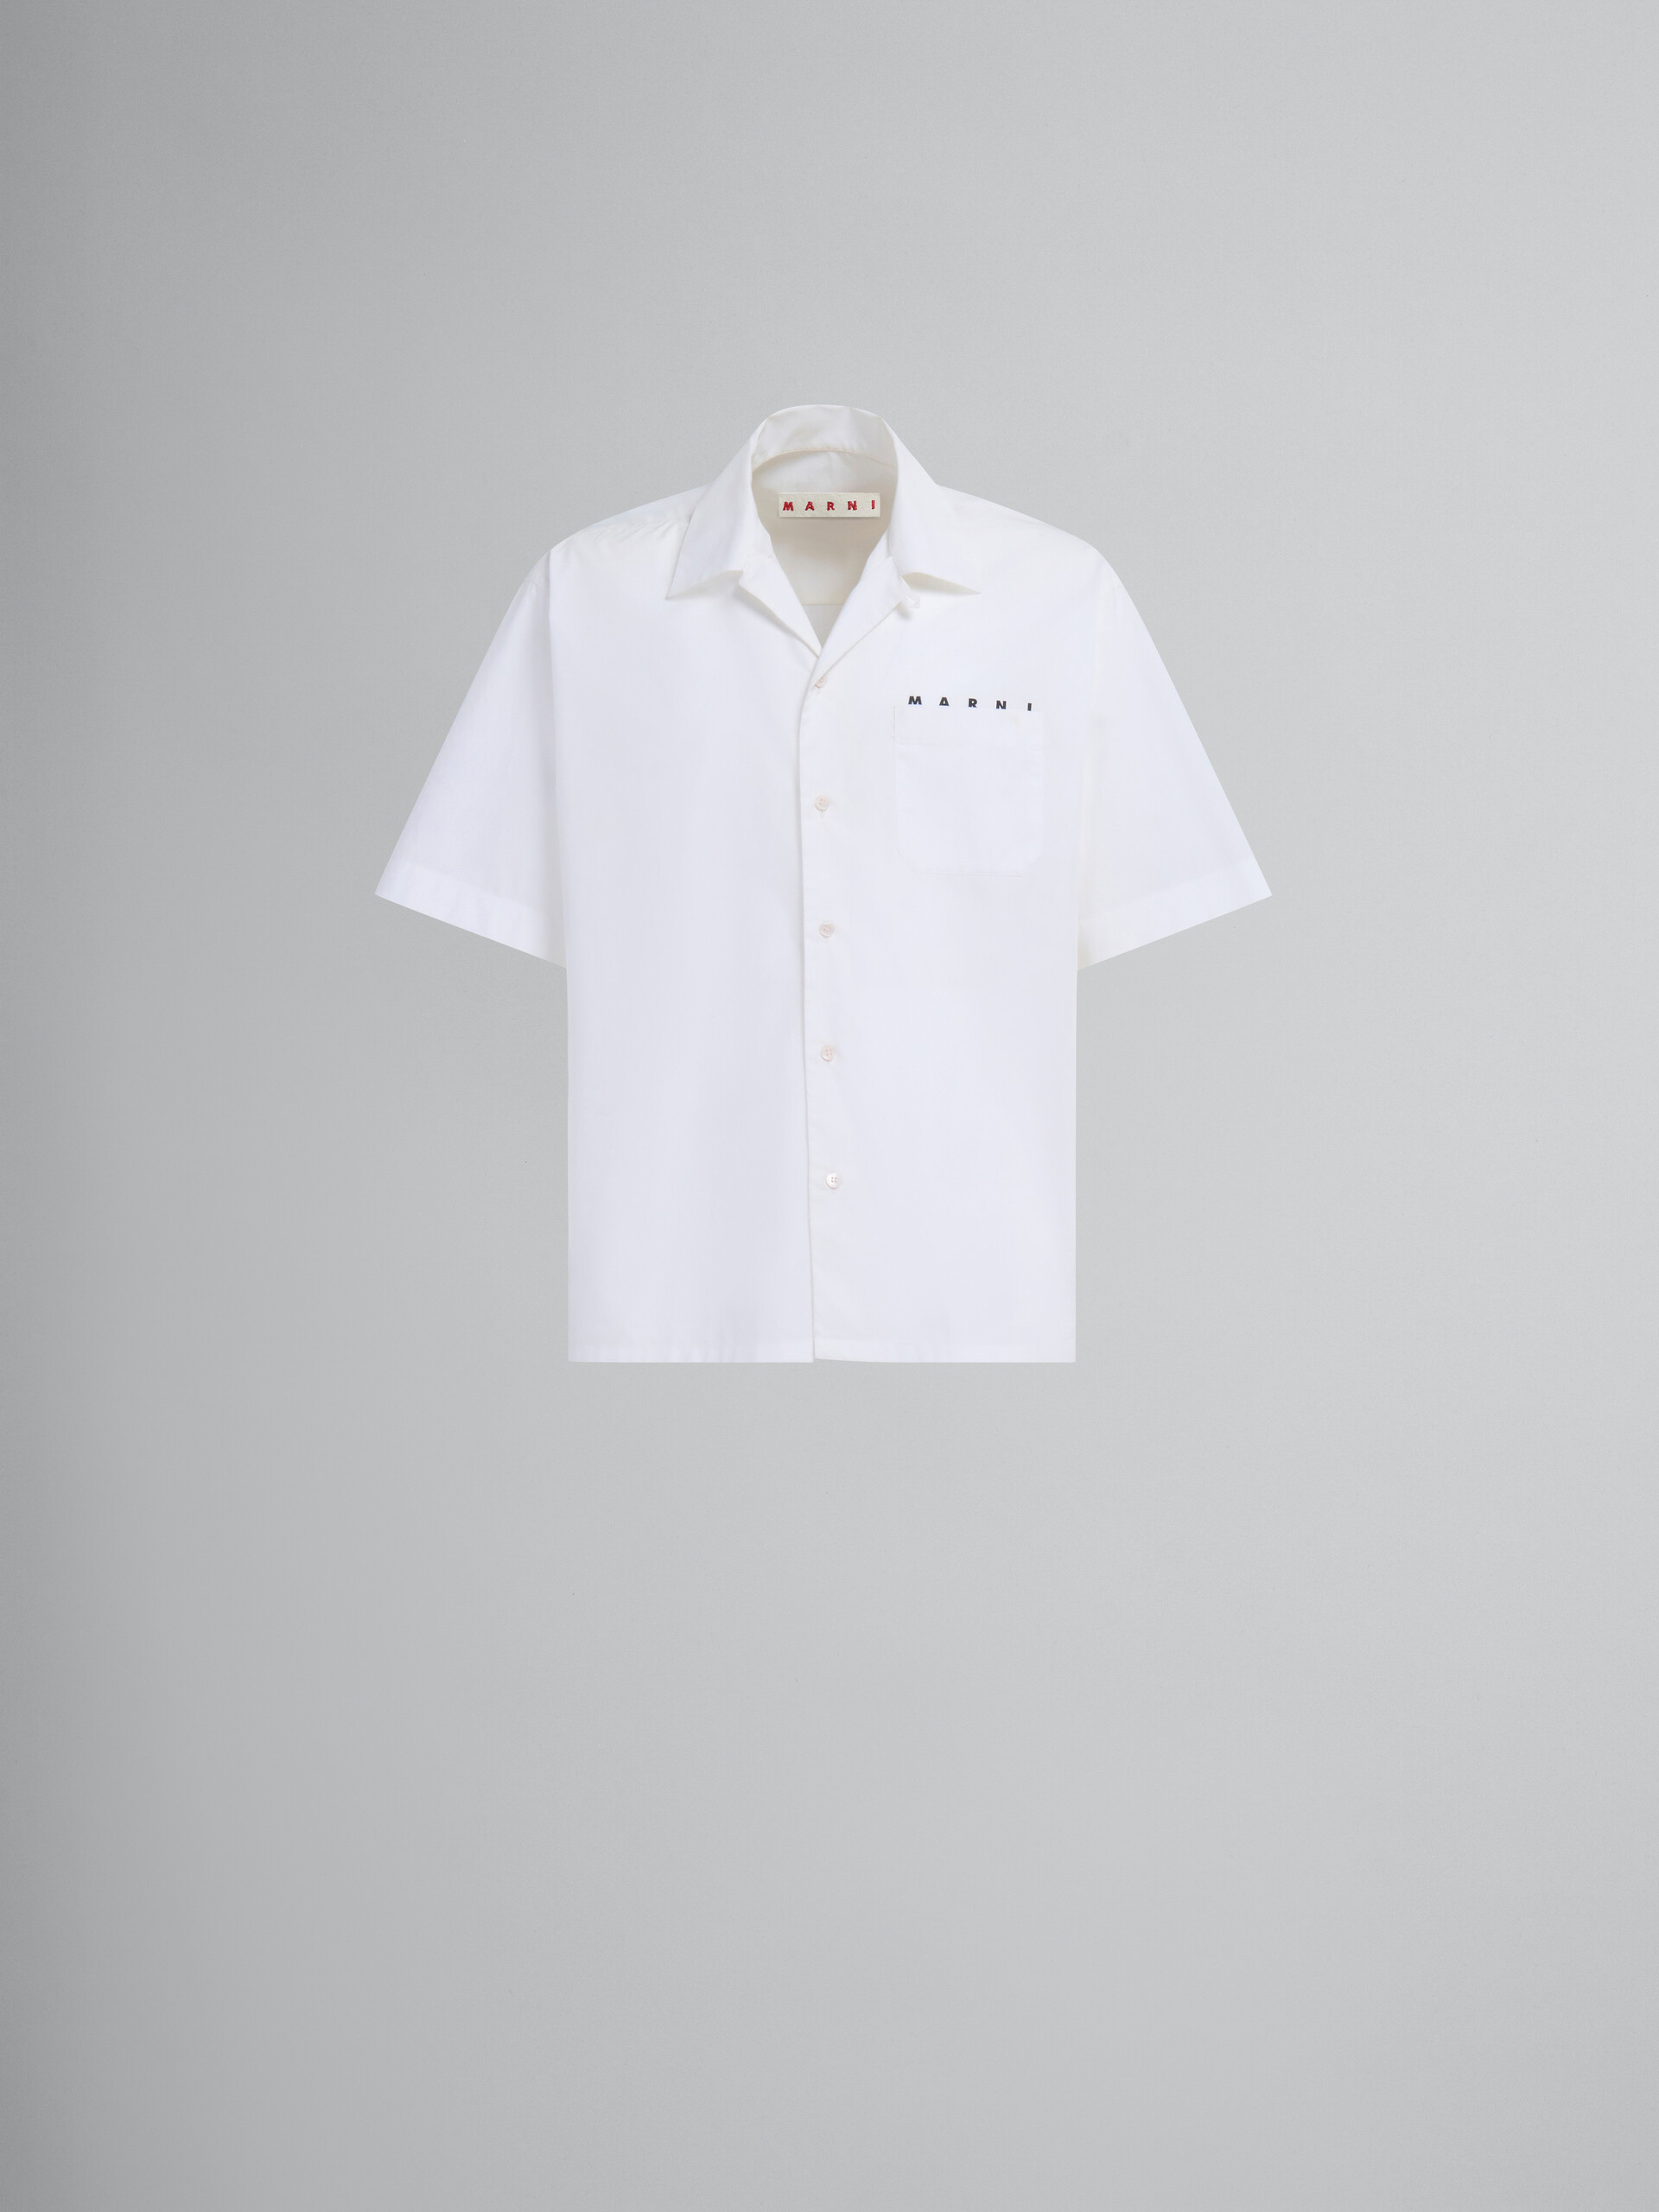 ホワイト オーガニックポプリン製 ボーリングシャツ、コンシールロゴ入り - シャツ - Image 1